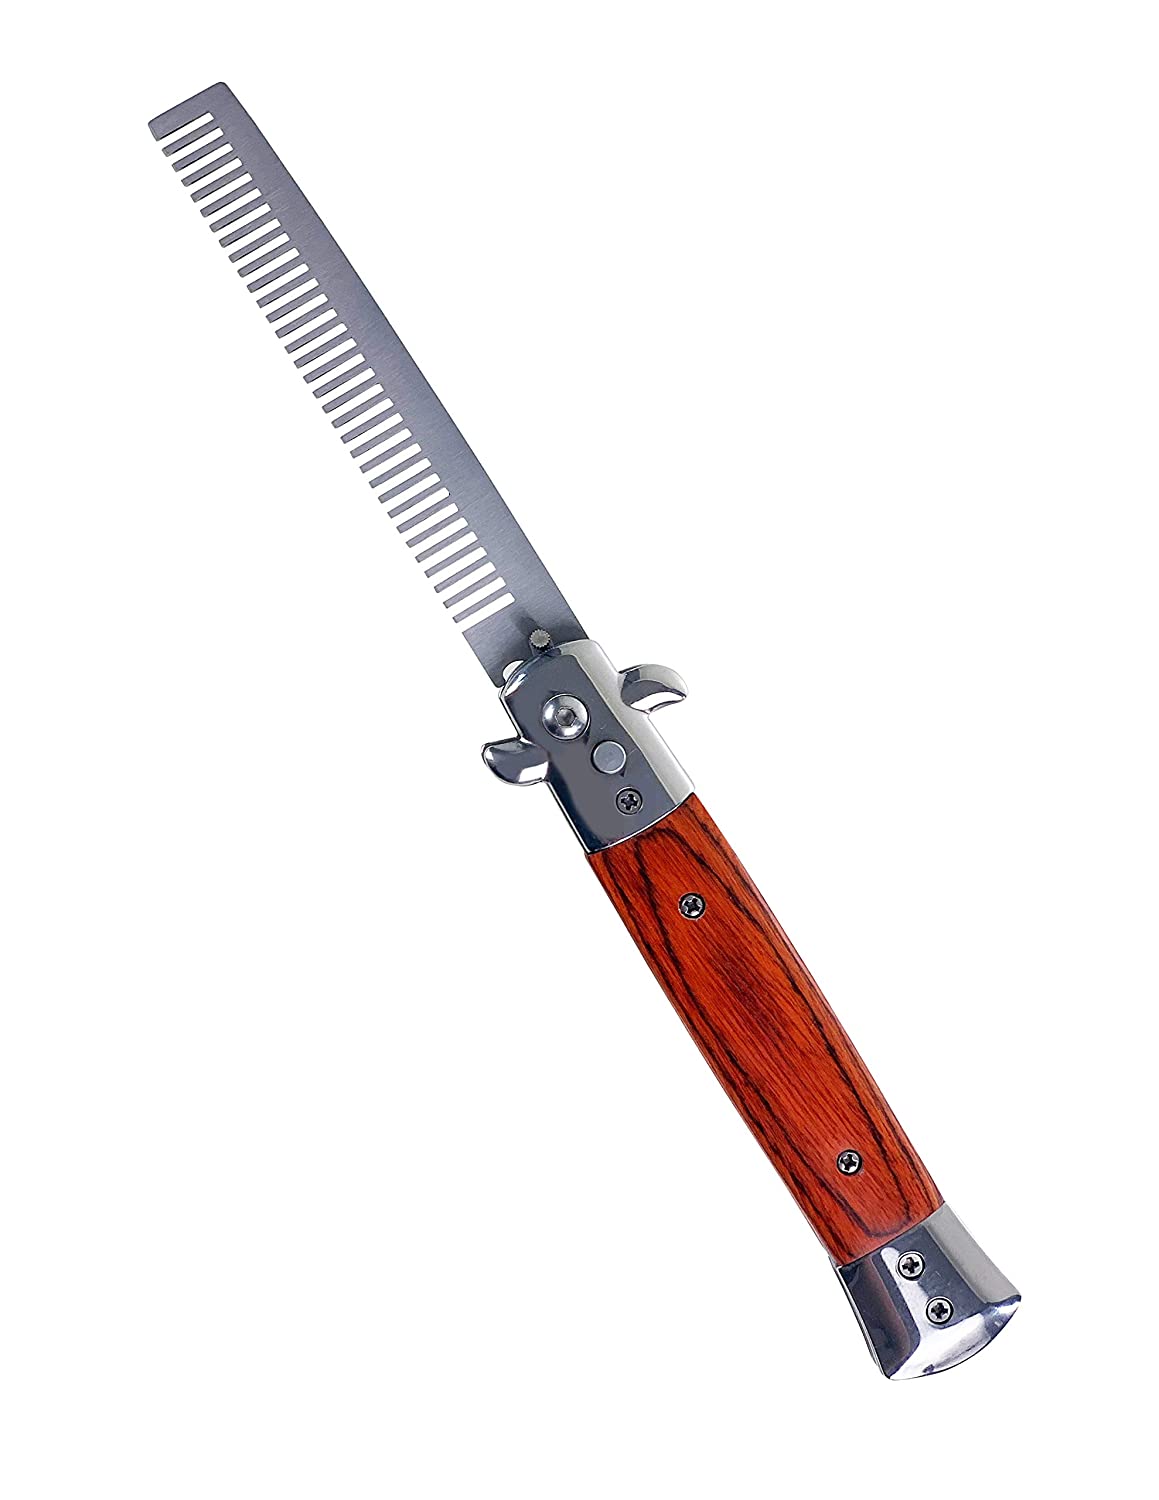 Switchblade comb pocket knife